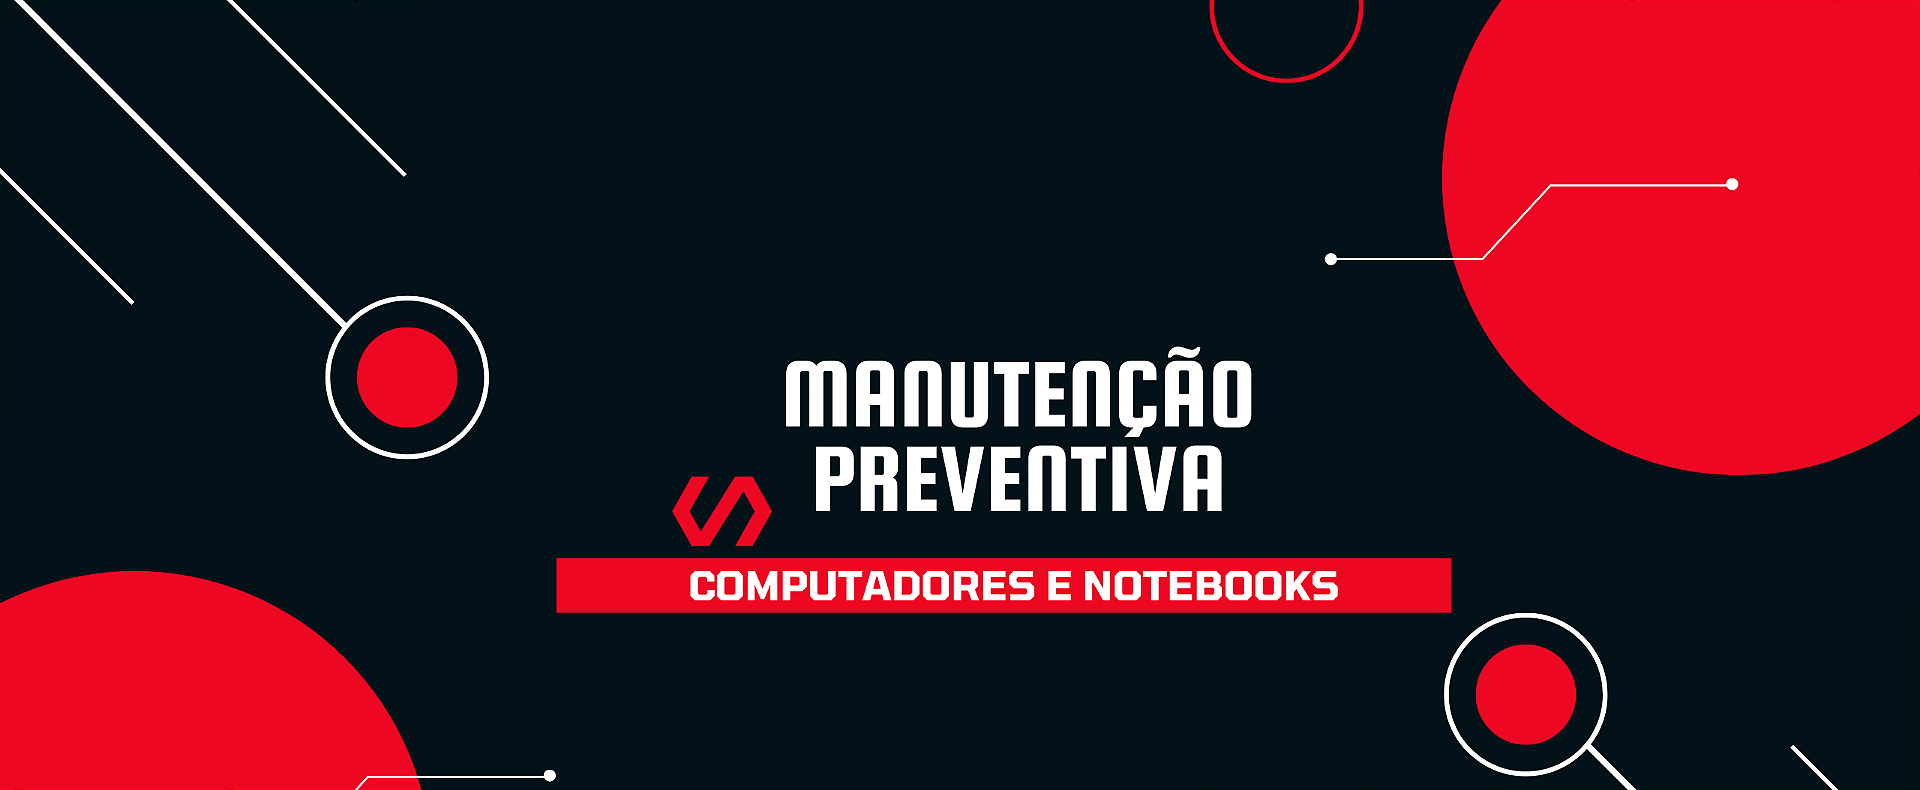 Manutenção Preventiva, Notebooks e Computadores